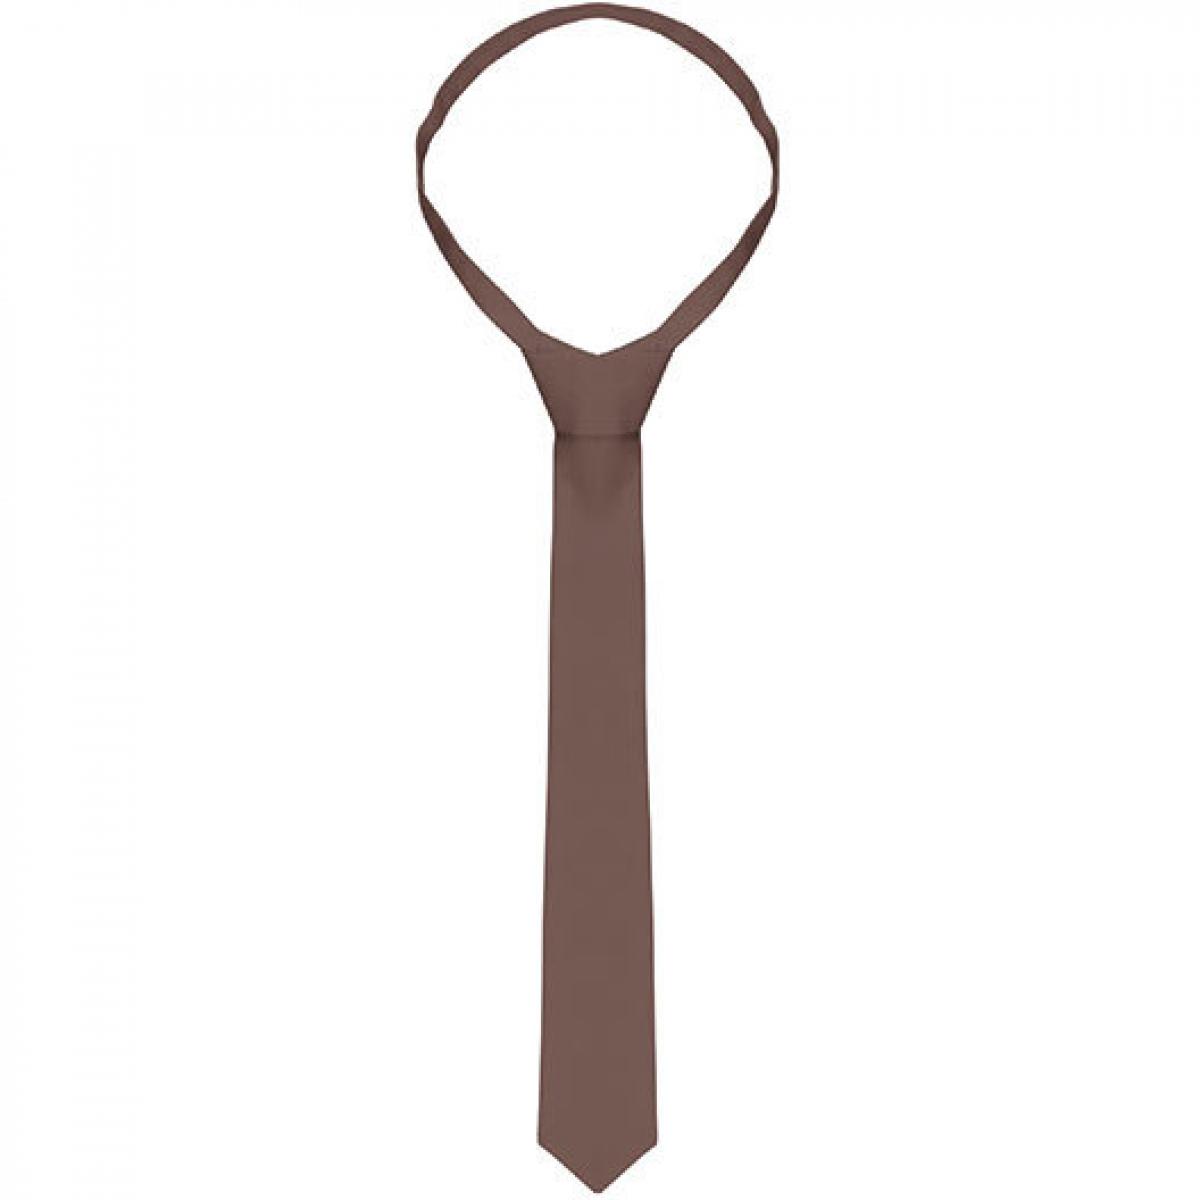 Hersteller: Karlowsky Herstellernummer: AK4 Artikelbezeichnung: Krawatte / 148 x 6,5 cm Farbe: Light Brown (ca. Pantone 2322C)